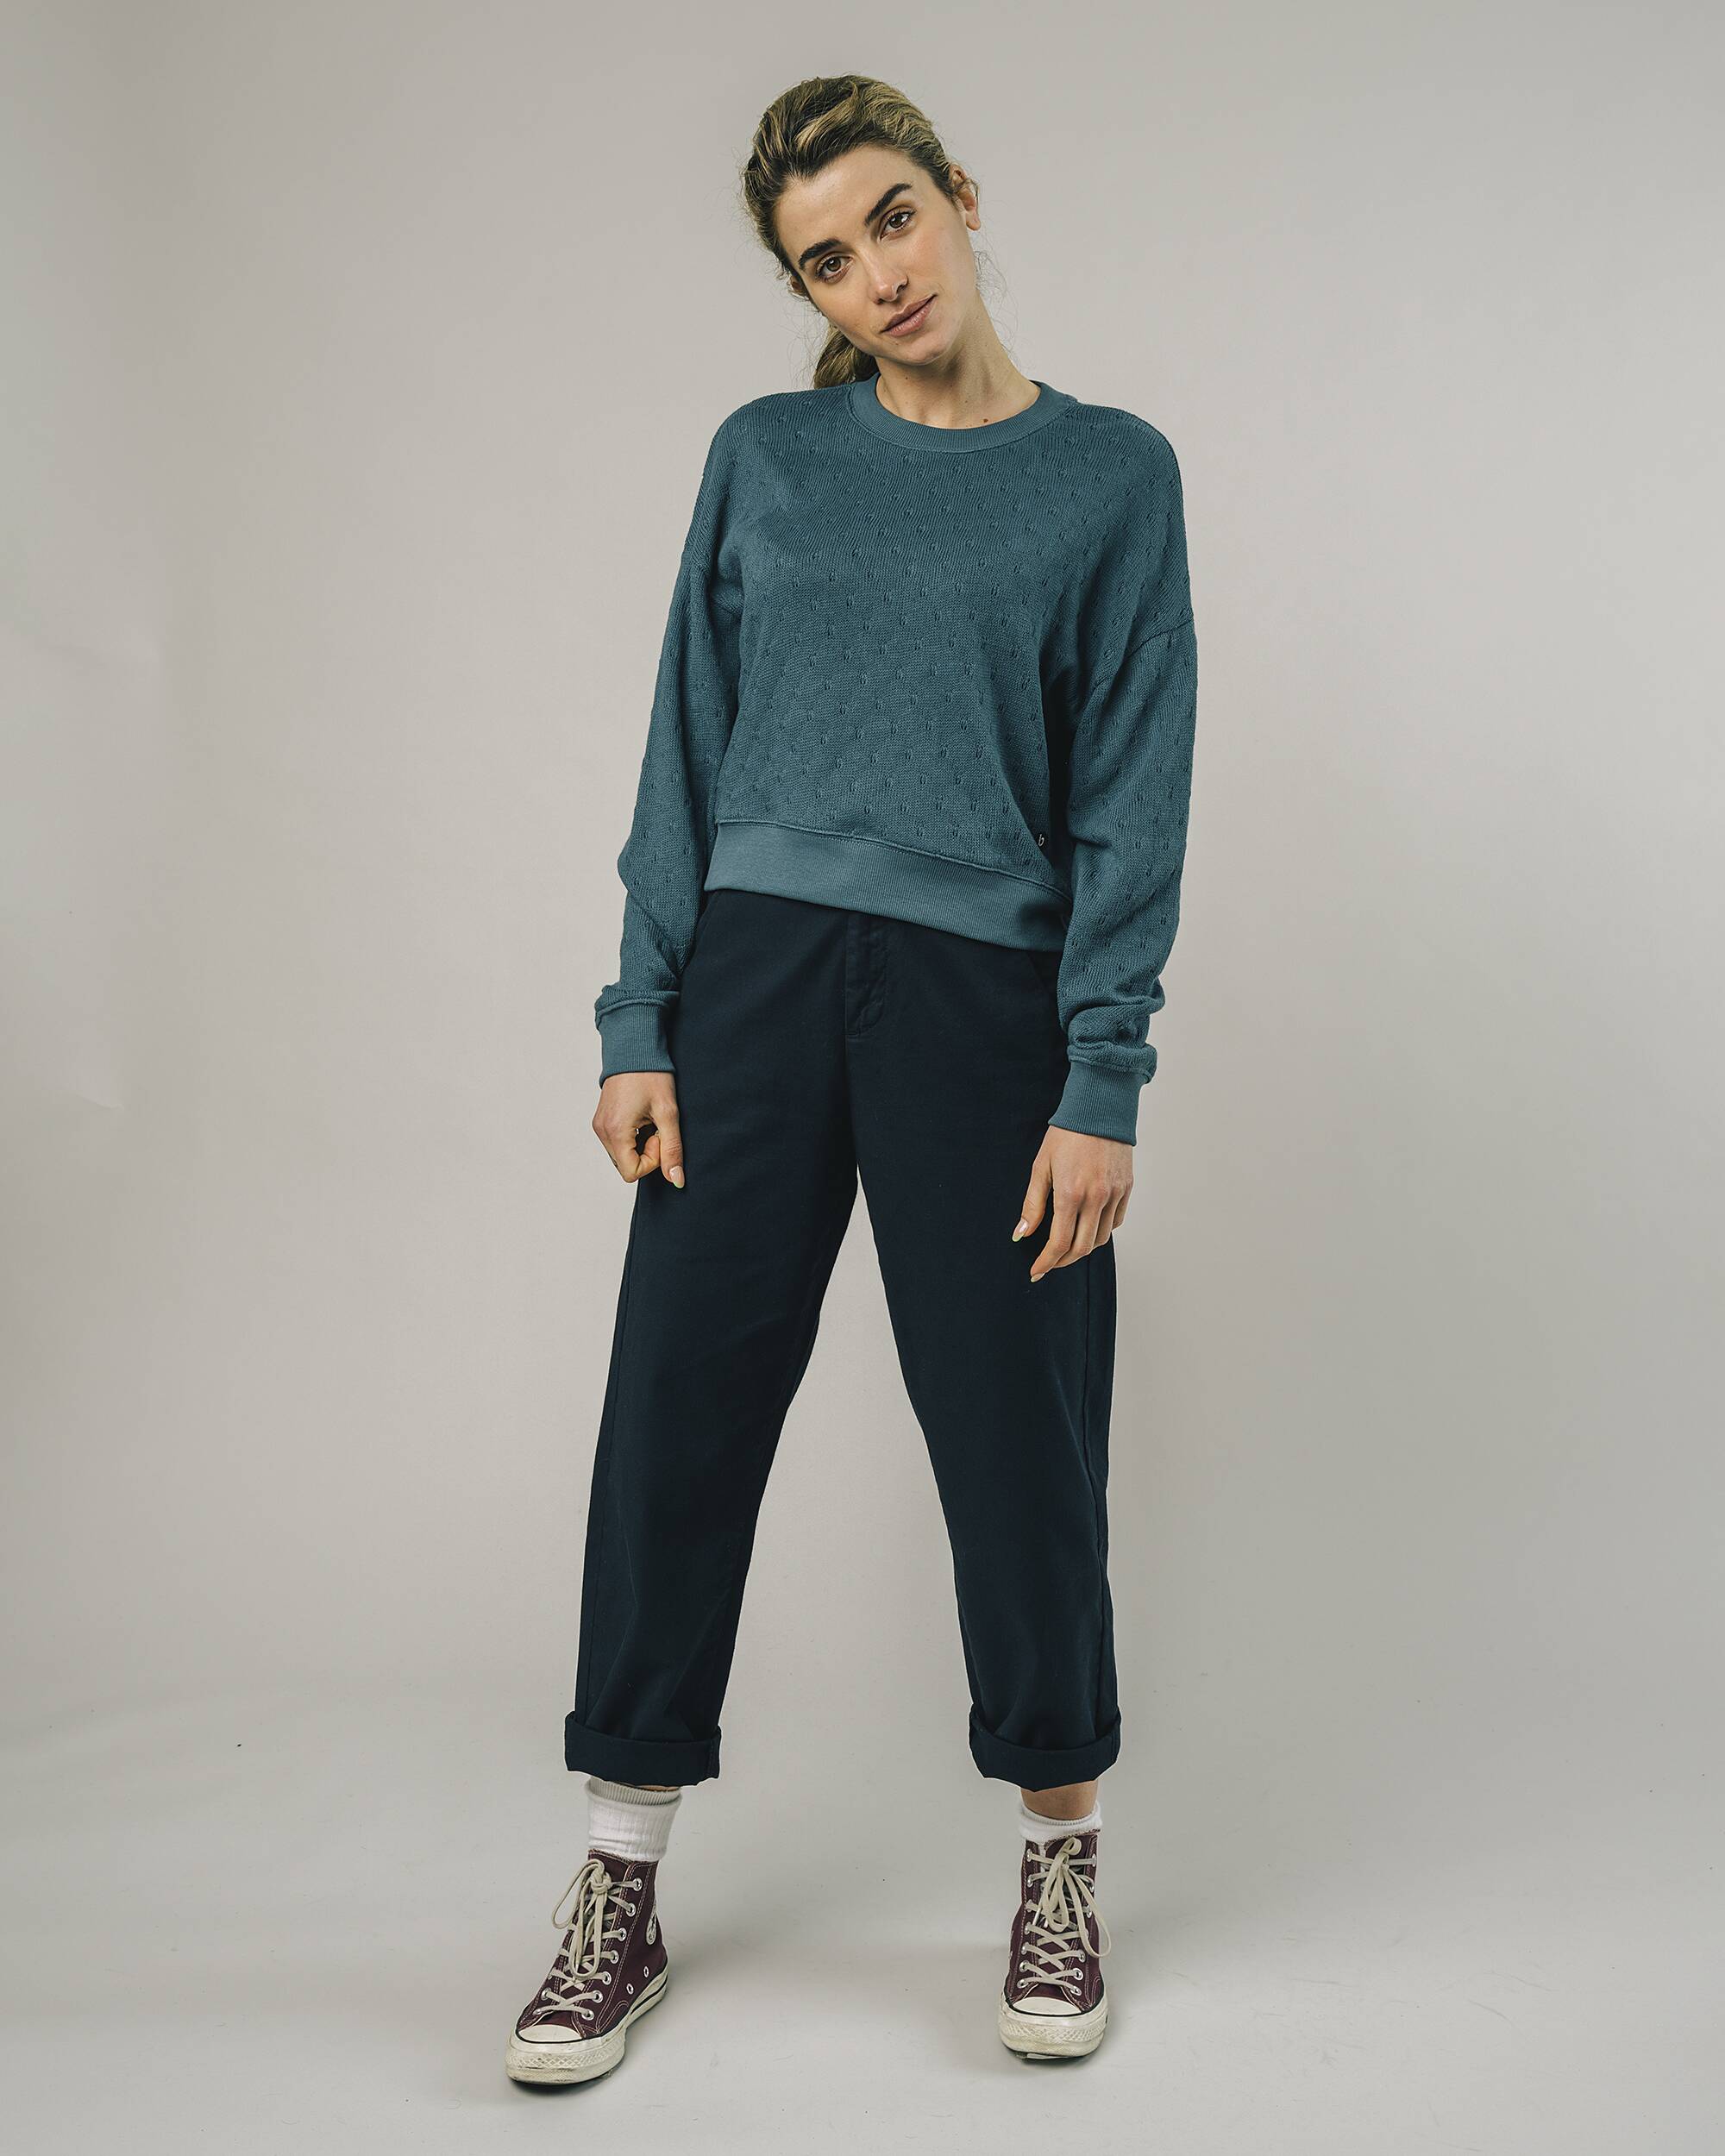 Oversized Sweater "Lace" in blau / türkis aus 100% Bio - Baumwolle von Brava Fabrics